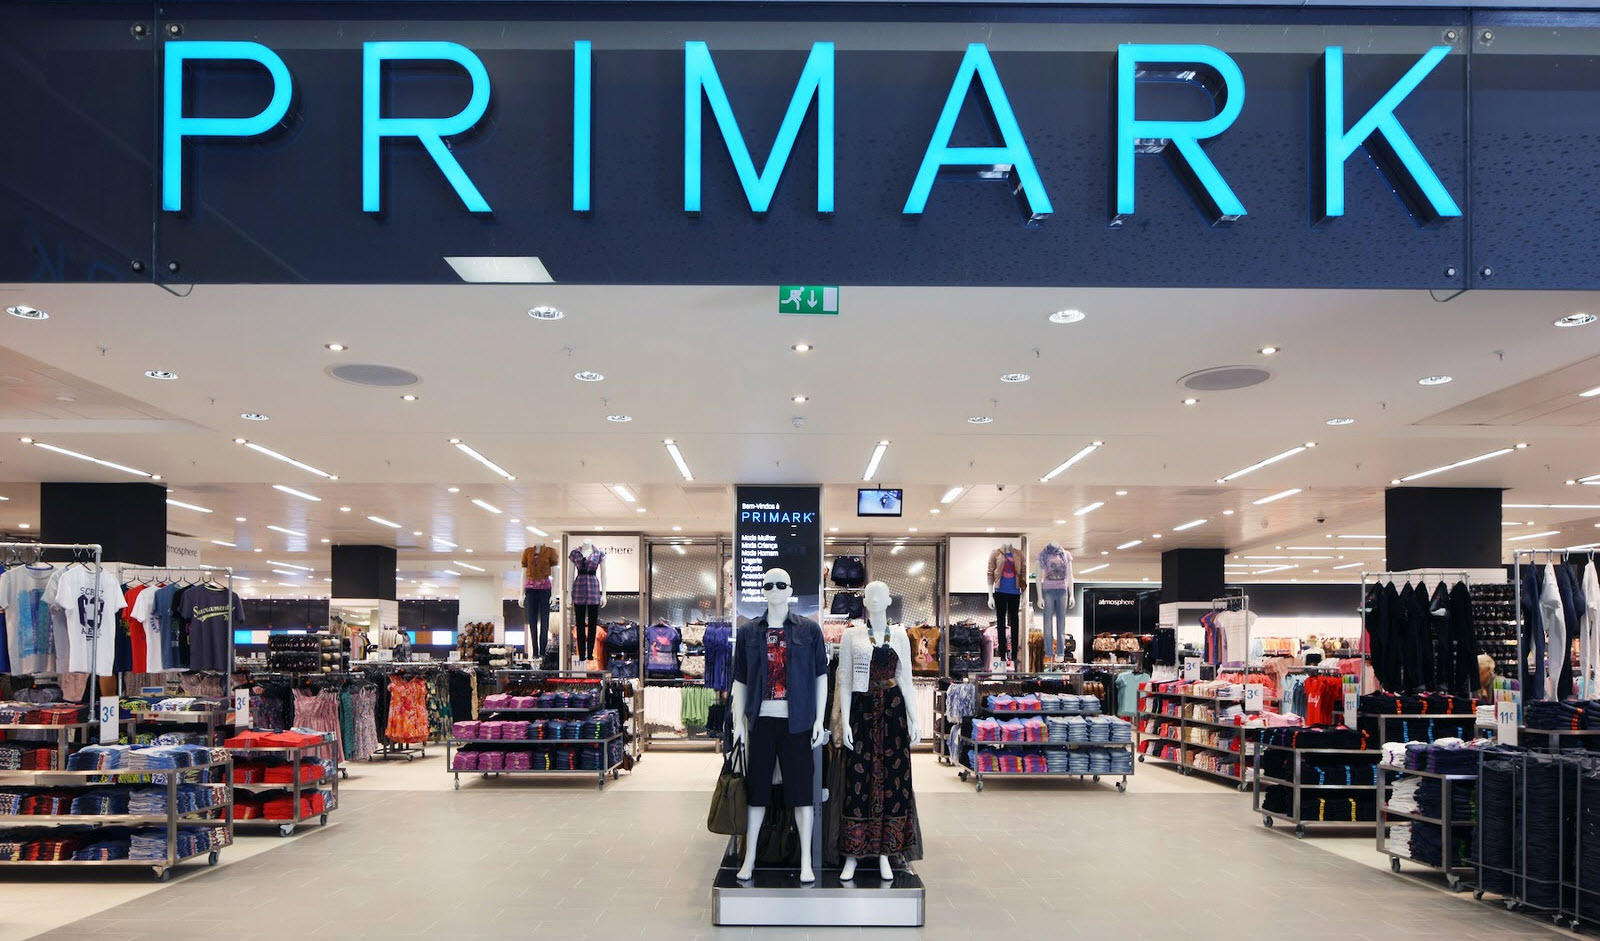 Primark cresce com grandes lojas e produtos baratos - Mercado&Consumo